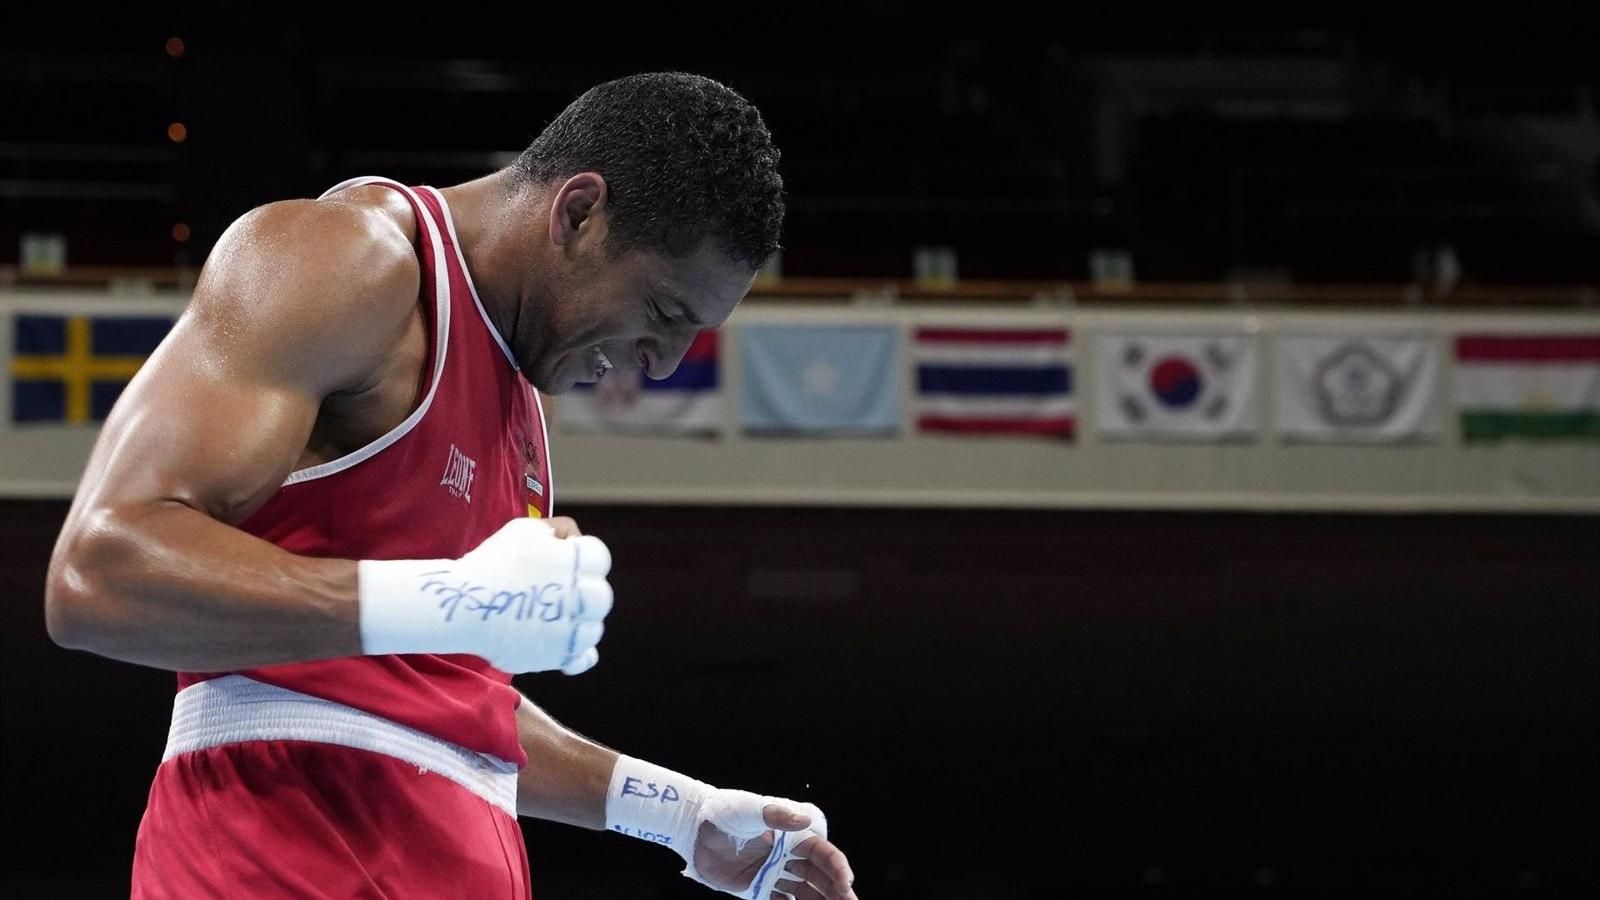 Boxeo.- El boxeador español Enmanuel Reyes consigue su clasificación para los Juegos de París